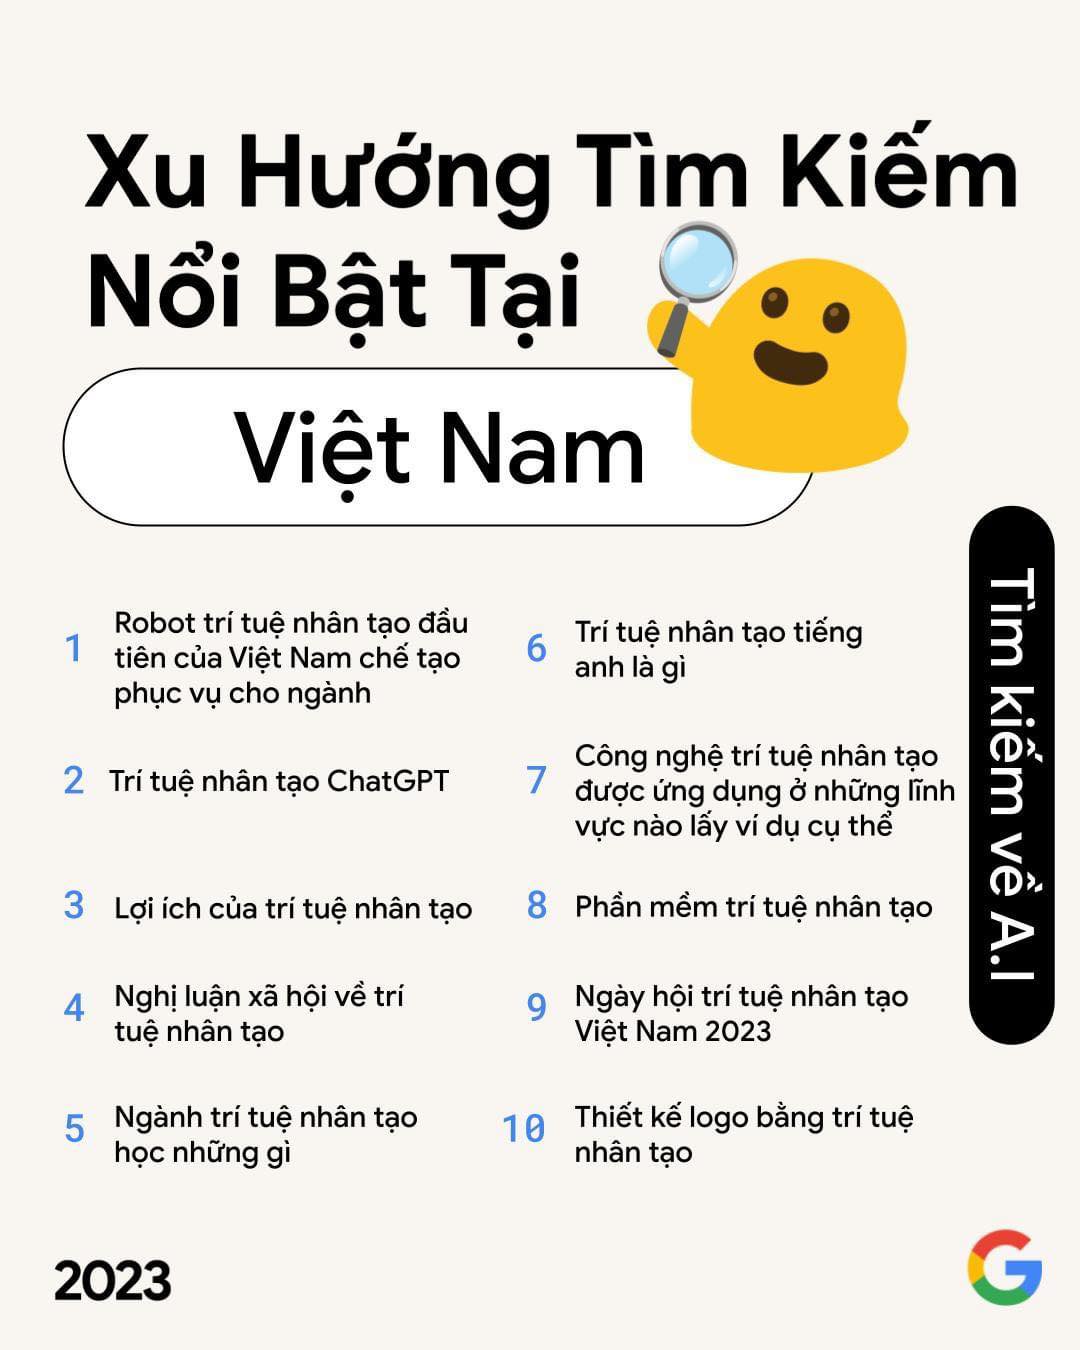 Top những từ khóa tìm kiếm hàng đầu về AI của người Việt